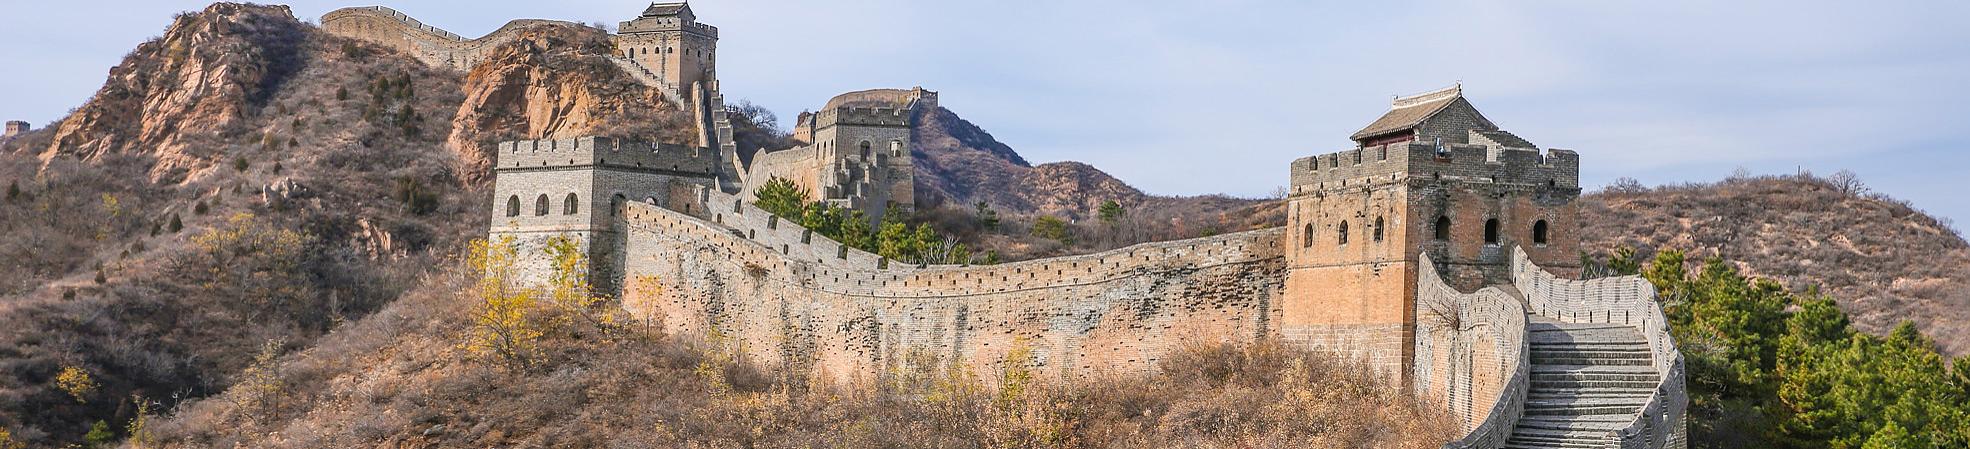 Jinshanling Great Wall's Information and Tips